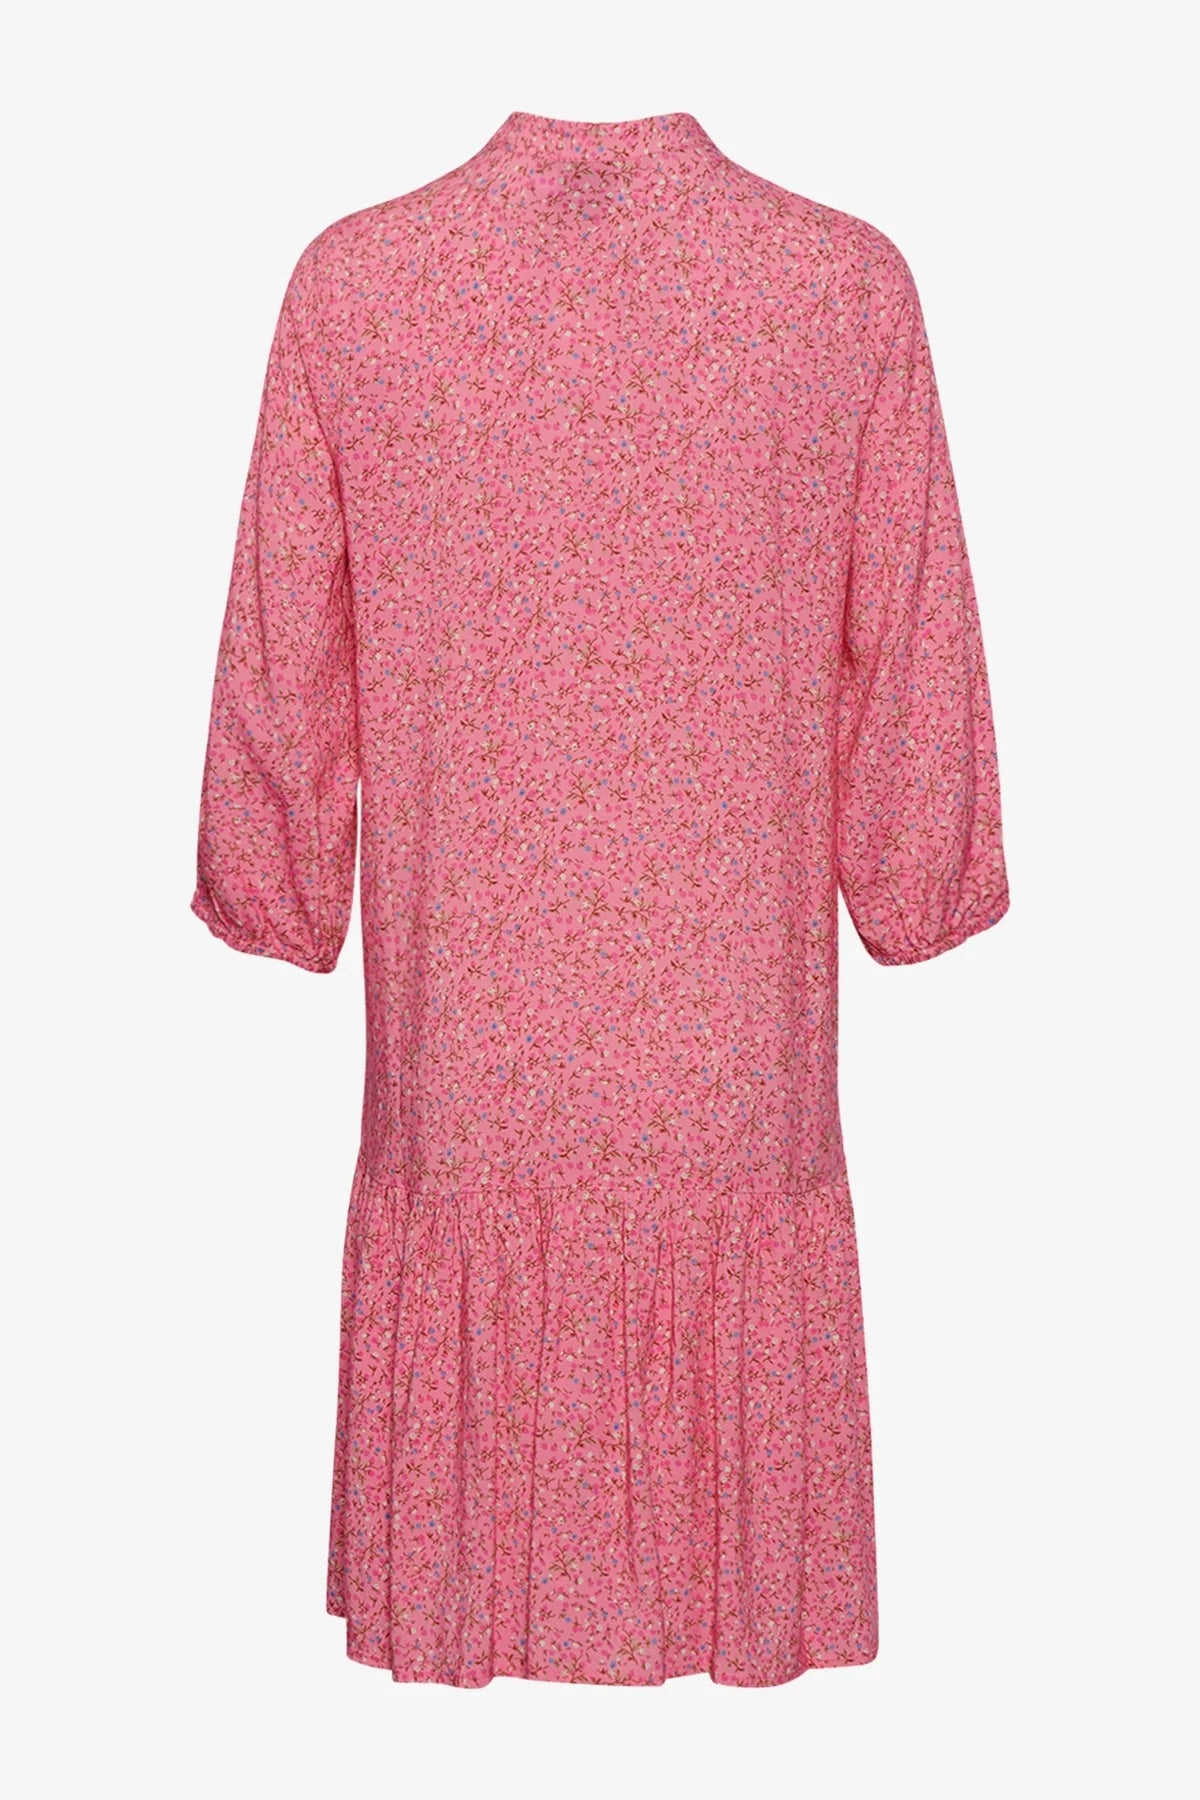 Noella Imogene Dress Pink Flower - hvittrad.no